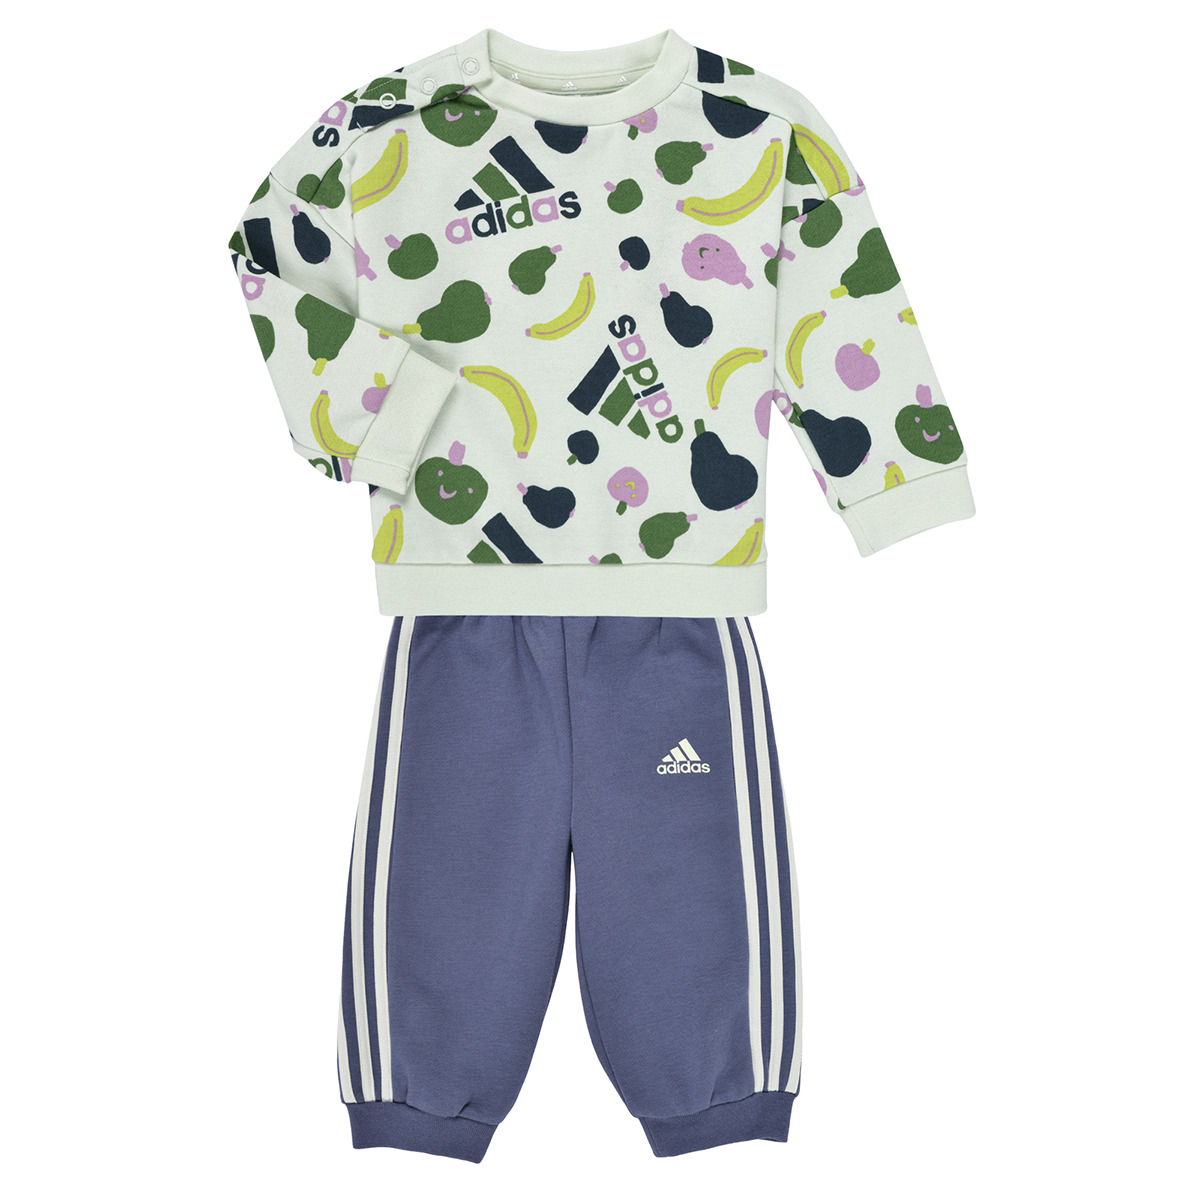 Vêtements Enfant Adidas originals High Sumac I FRUIT FT JOG Multicolore